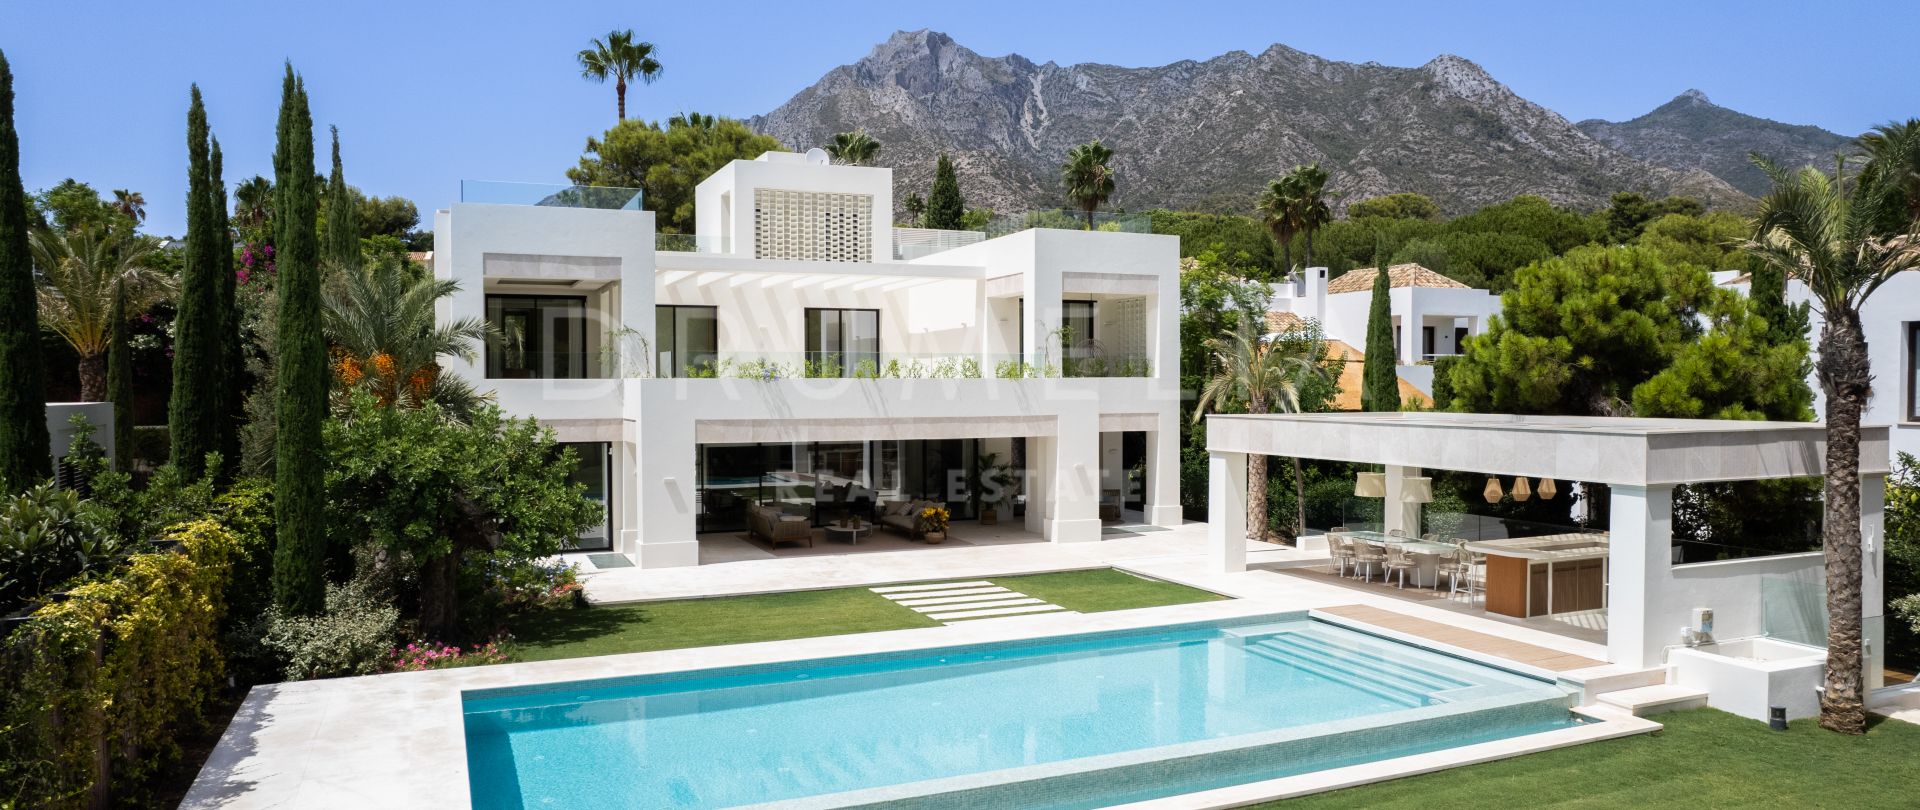 Gran villa de lujo moderna y sofisticada a estrenar con vistas al mar, Altos Reales, Milla de Oro de Marbella